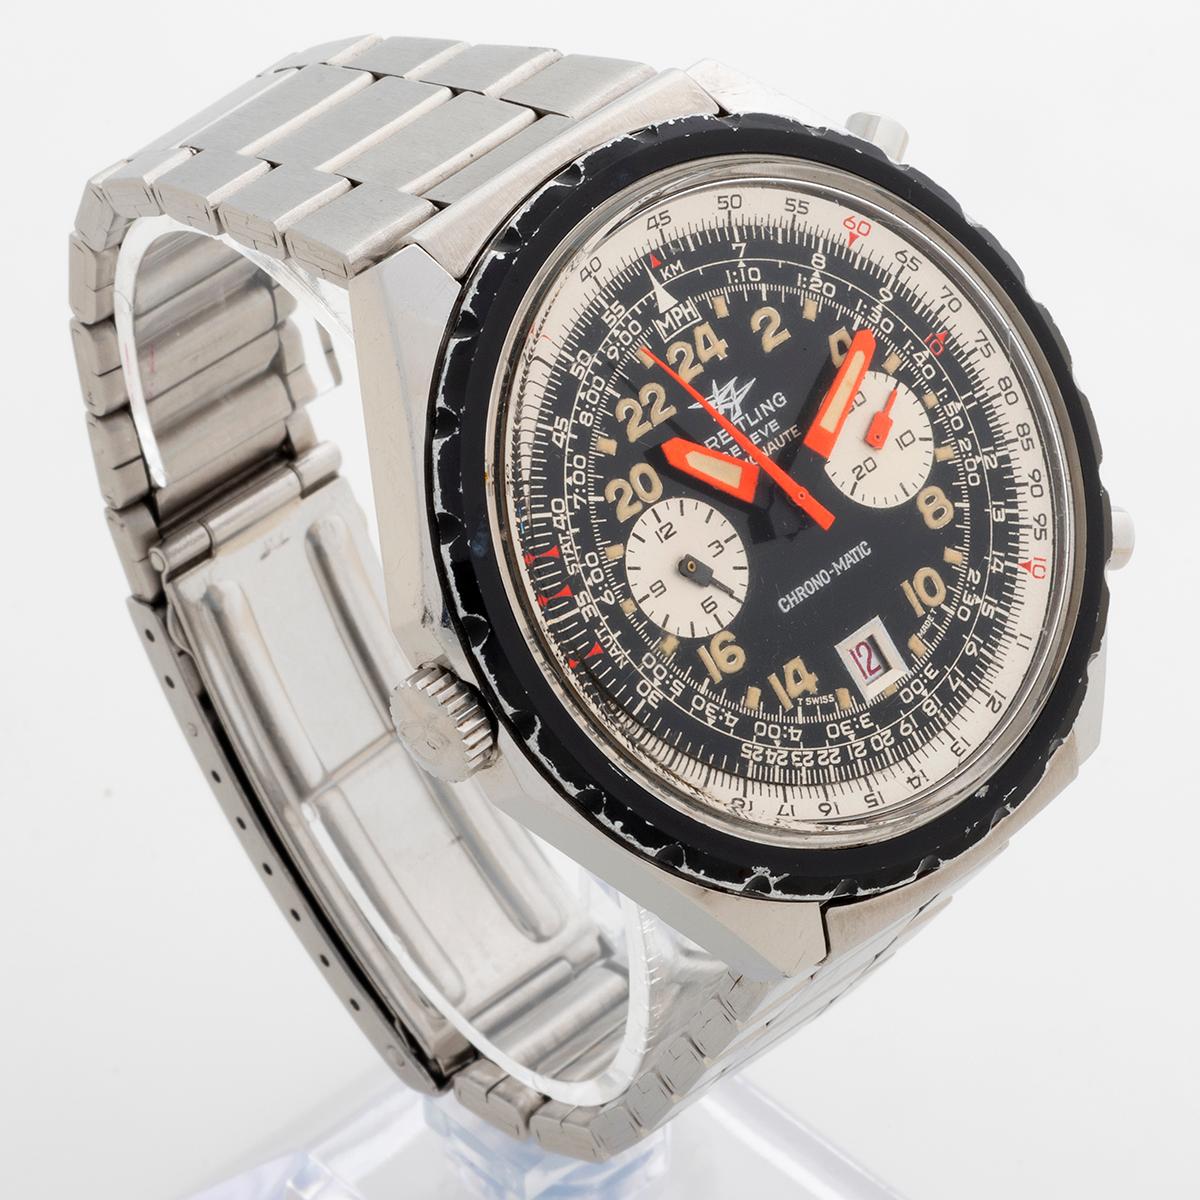 Unsere seltene und historisch bedeutende Breitling Cosmonaute Chrono-matic Referenz 1809 mit Kaliber 11 war einer der ersten automatischen Chronographen, die 1967 auf den Markt kamen. Ebenso erwähnenswert ist die 24-Stunden-Dauerzeit, die das